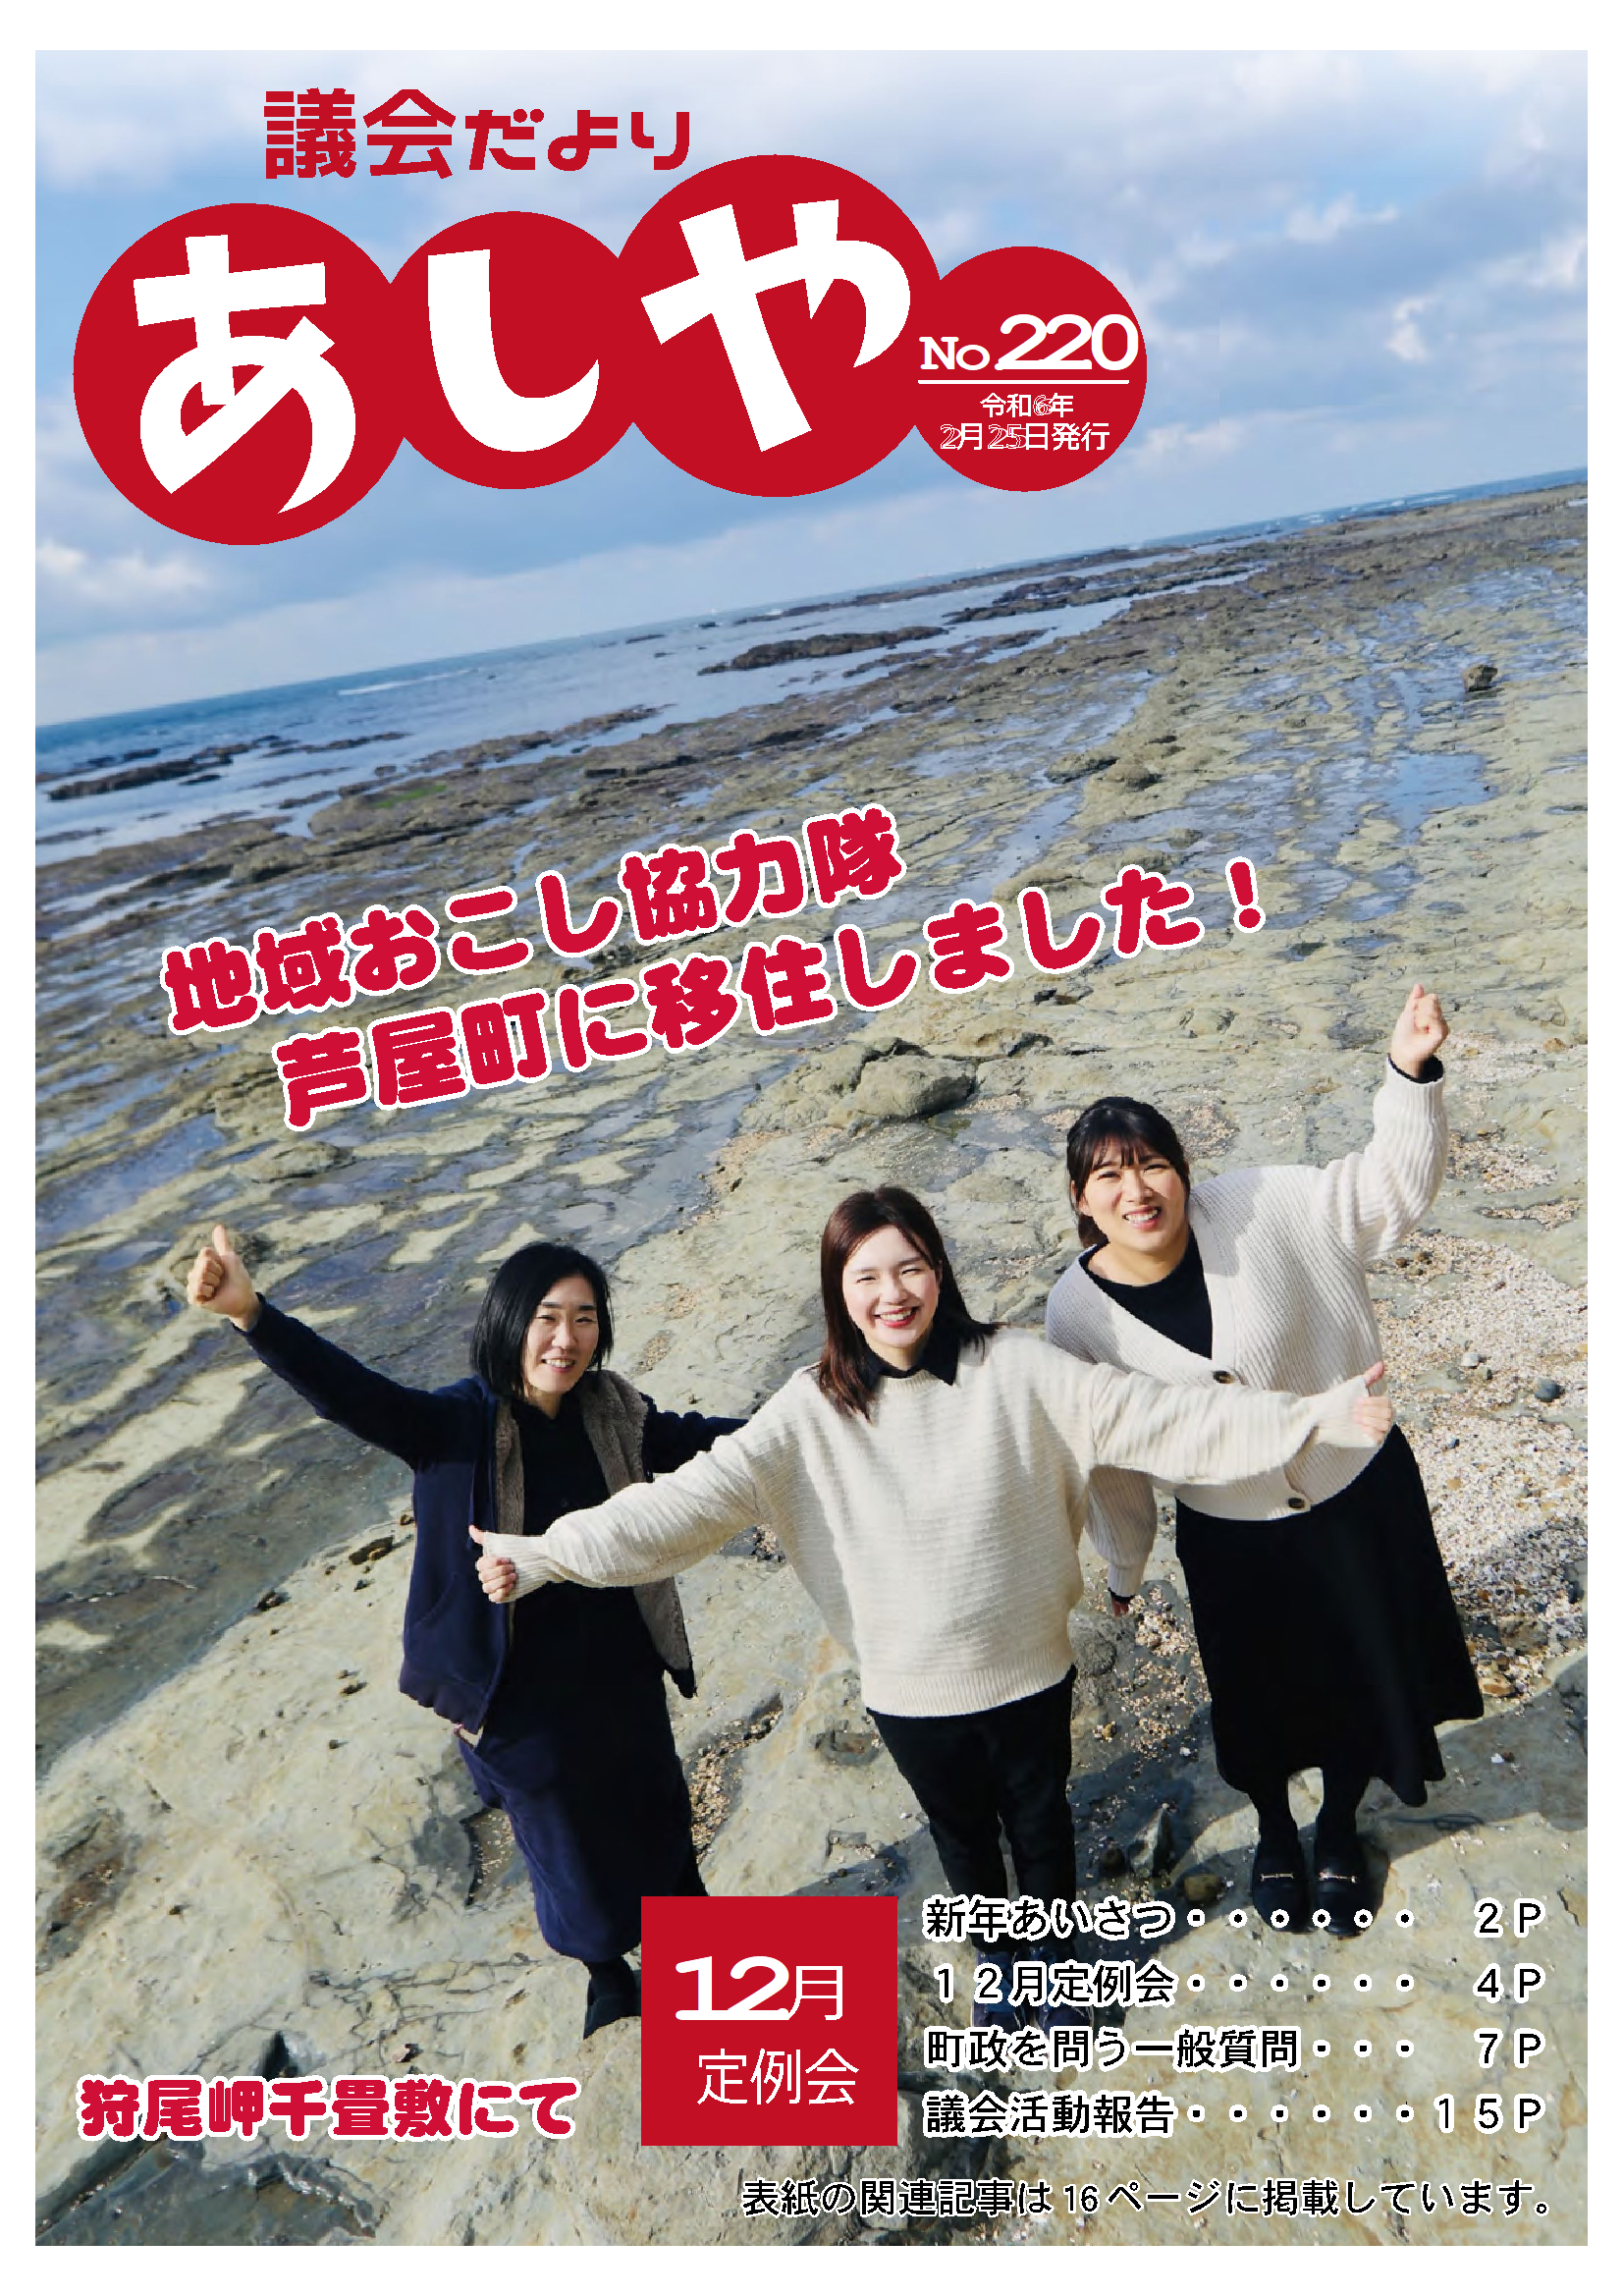 議会だよりあしや220号（令和6年2月25日）表紙　3人の地域おこしが狩尾岬千畳敷で笑っている写真